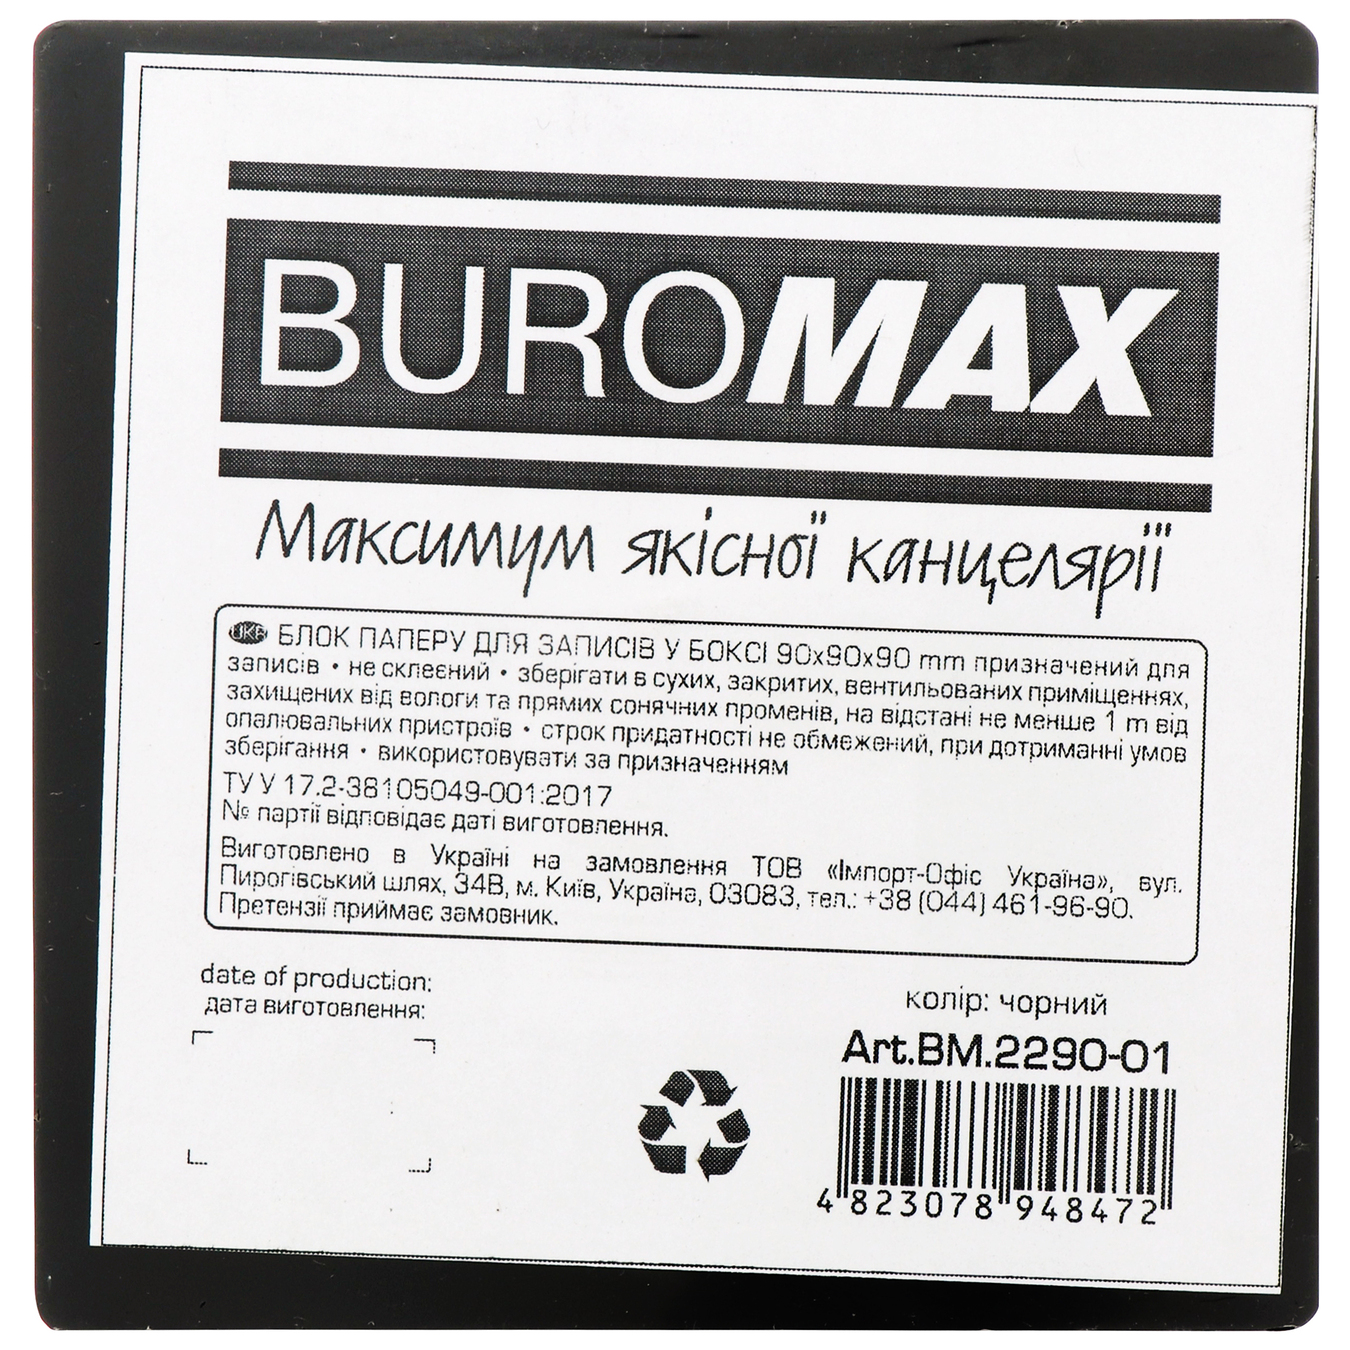 Бокс з білим папером BuroМax димчастий 90х90х90 мм 3